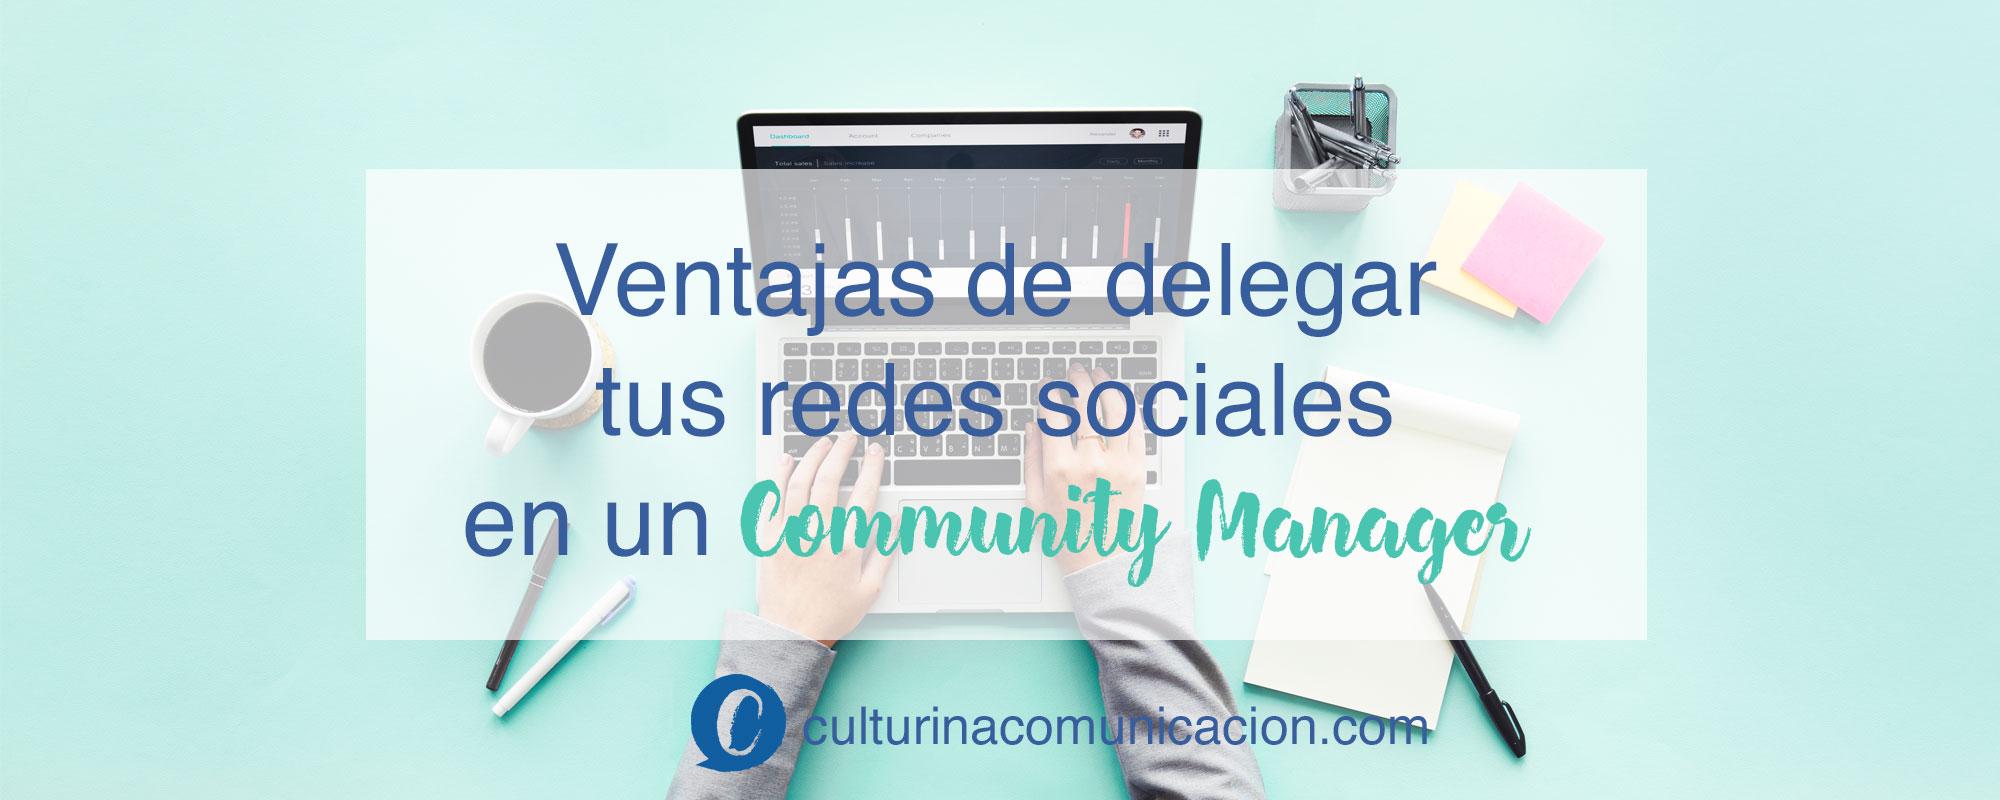 ventajas delegar redes sociales community manager, culturina comunicación